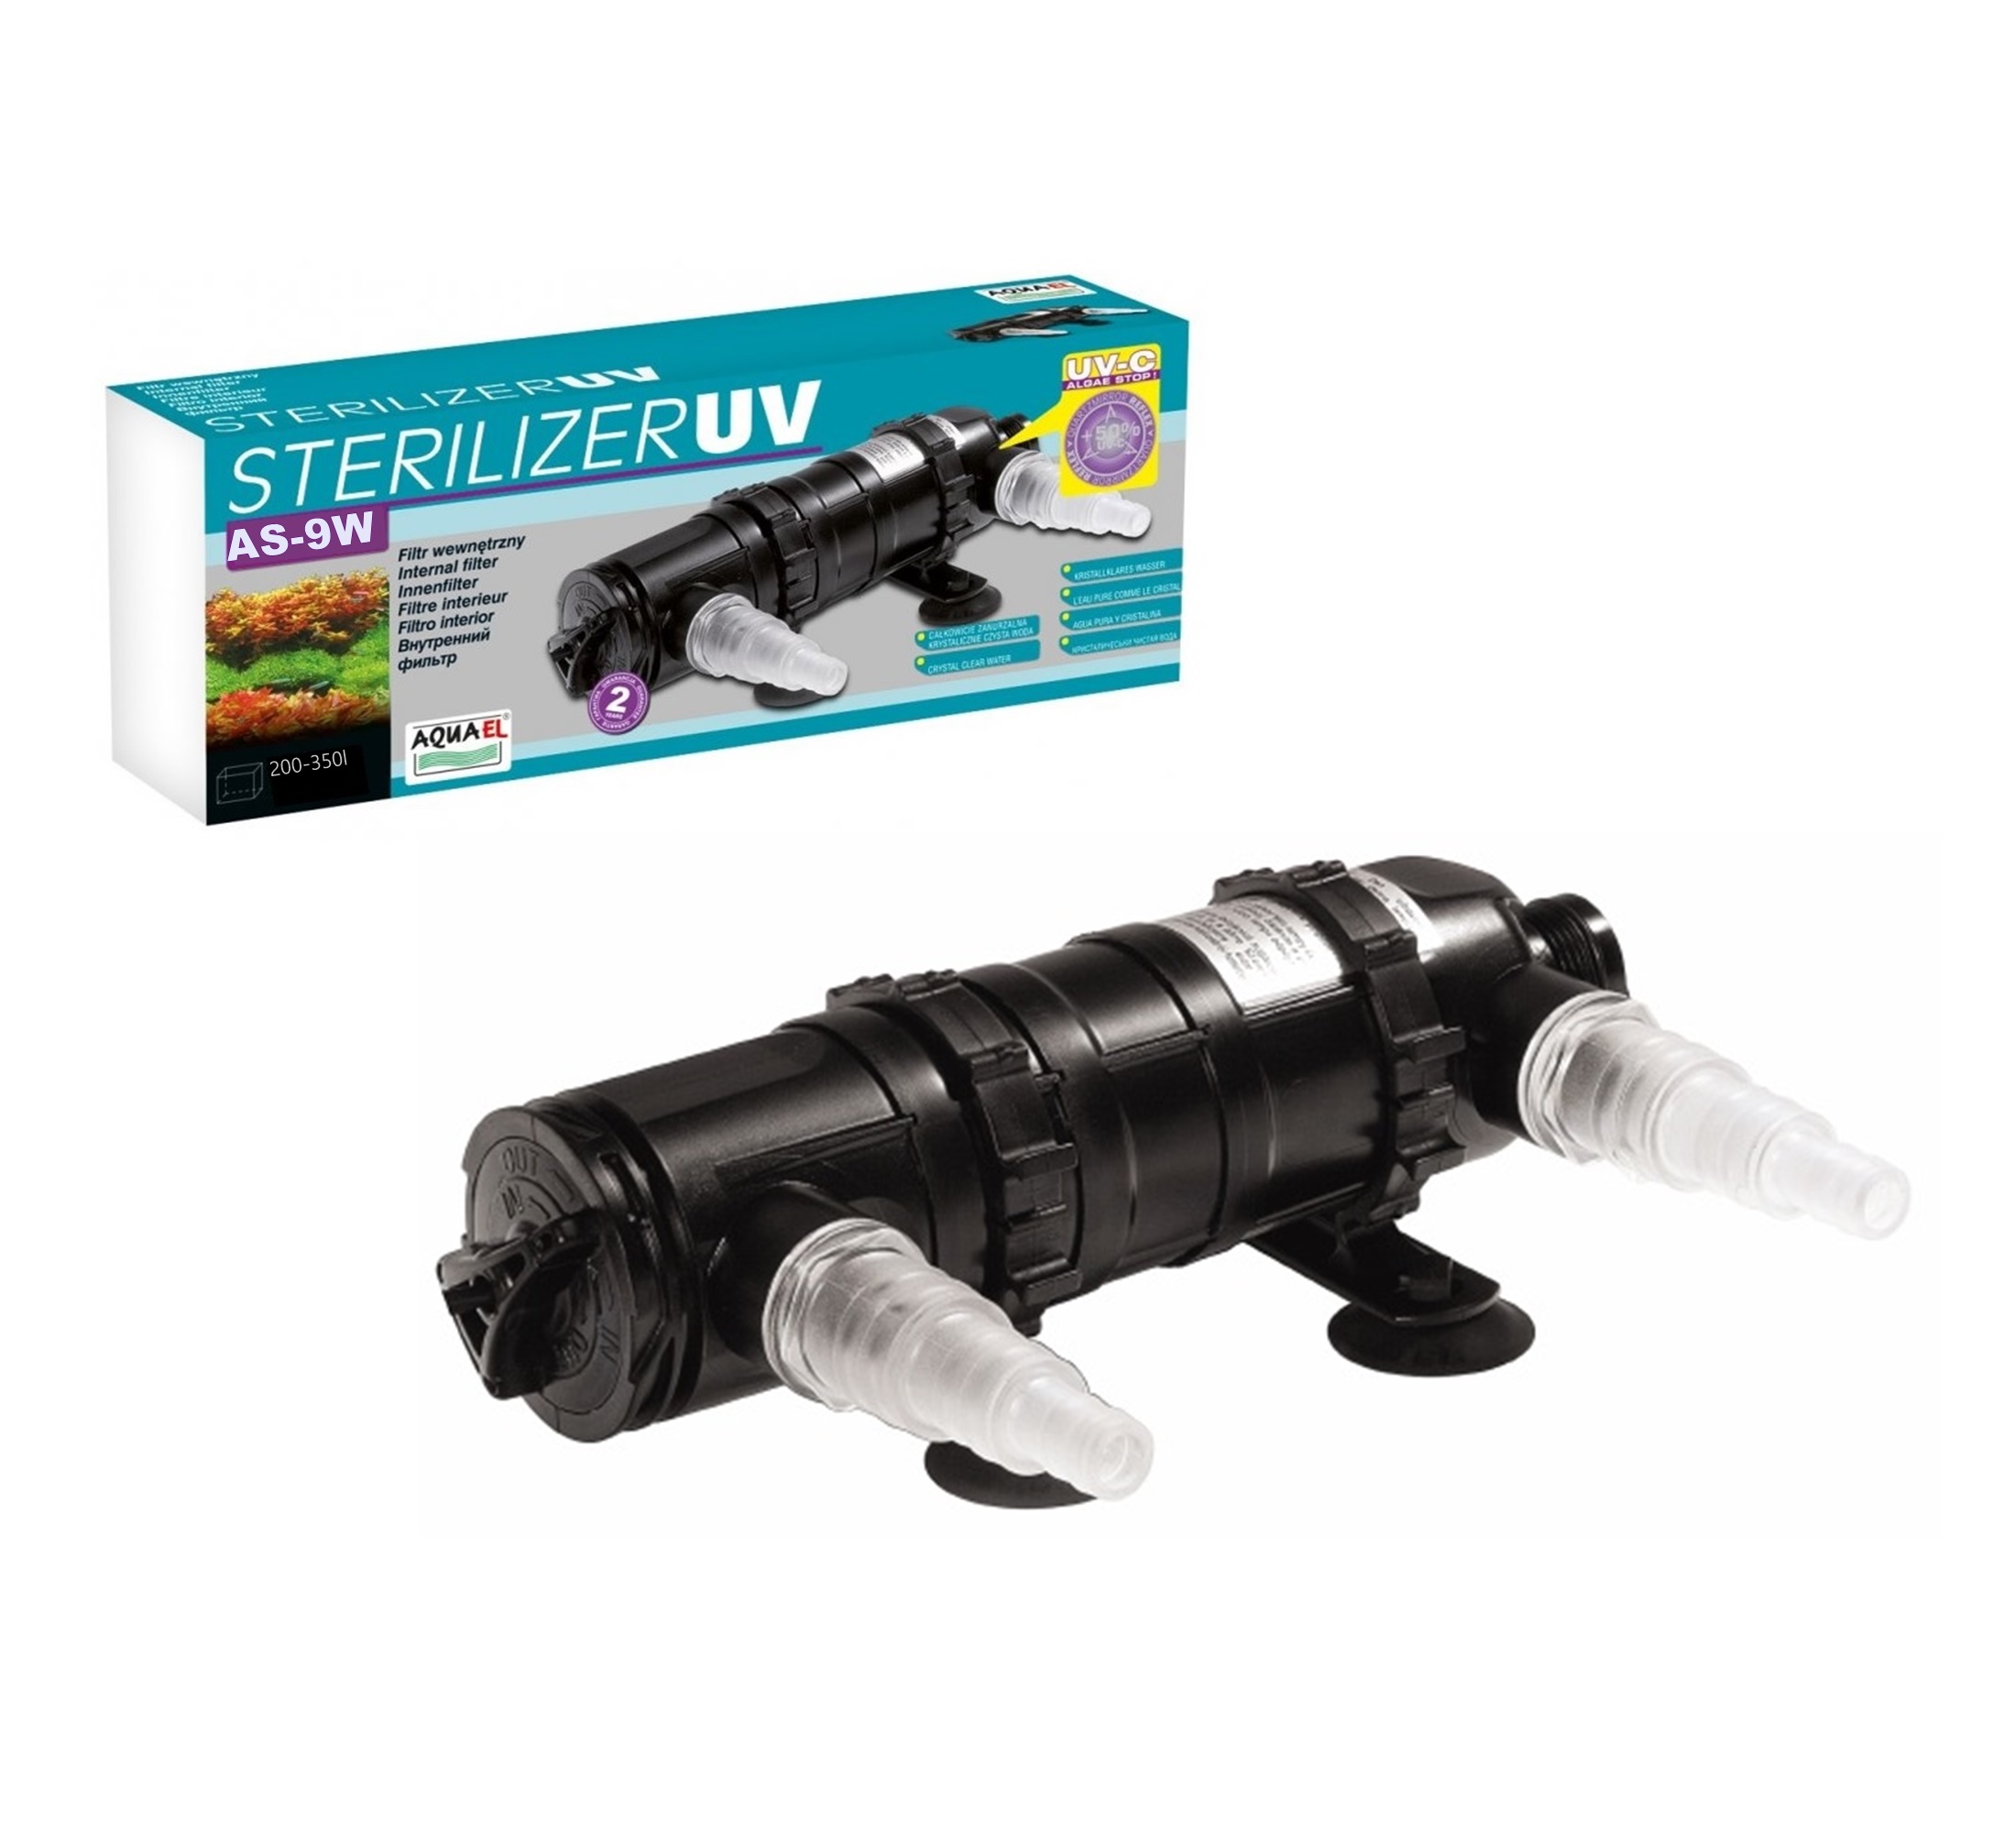 Стерилизатор для аквариума. Aquael стерилизатор UV as (9w). УФ-стерилизатор Aquael Sterilizer UV as 3 Вт. УФ-стерилизатор Aquael UV PS 5 Вт. УФ-стерилизатор Aquael Sterilizer UV as 9 Вт.